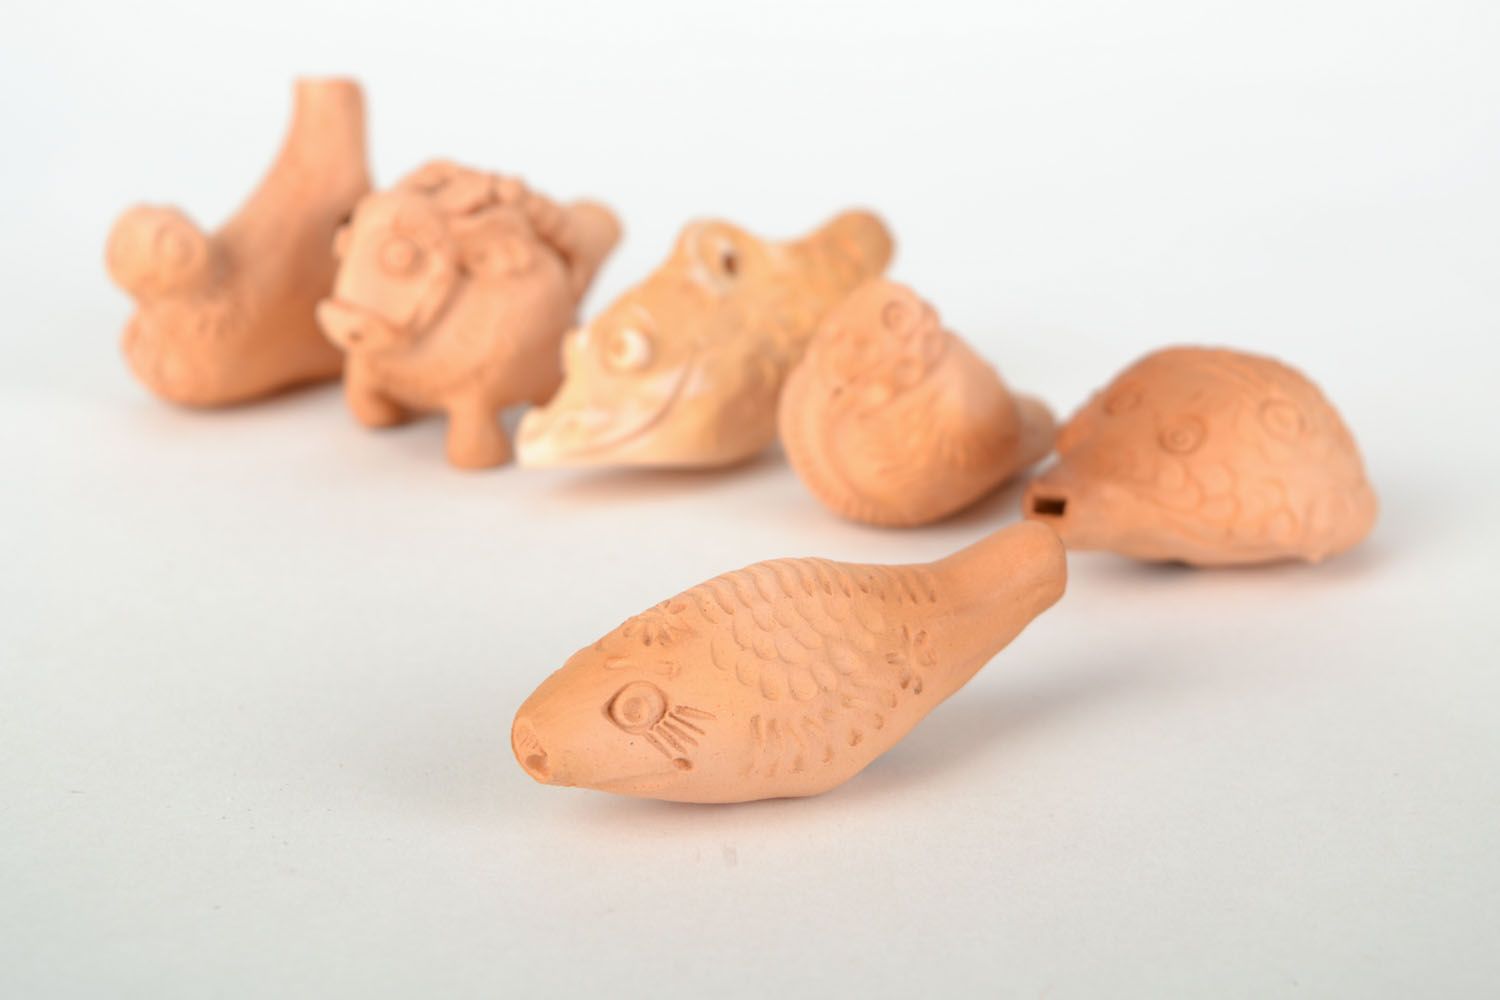 Apito de argila brinquedo de cerâmica artesanal em forma do peixe  foto 1